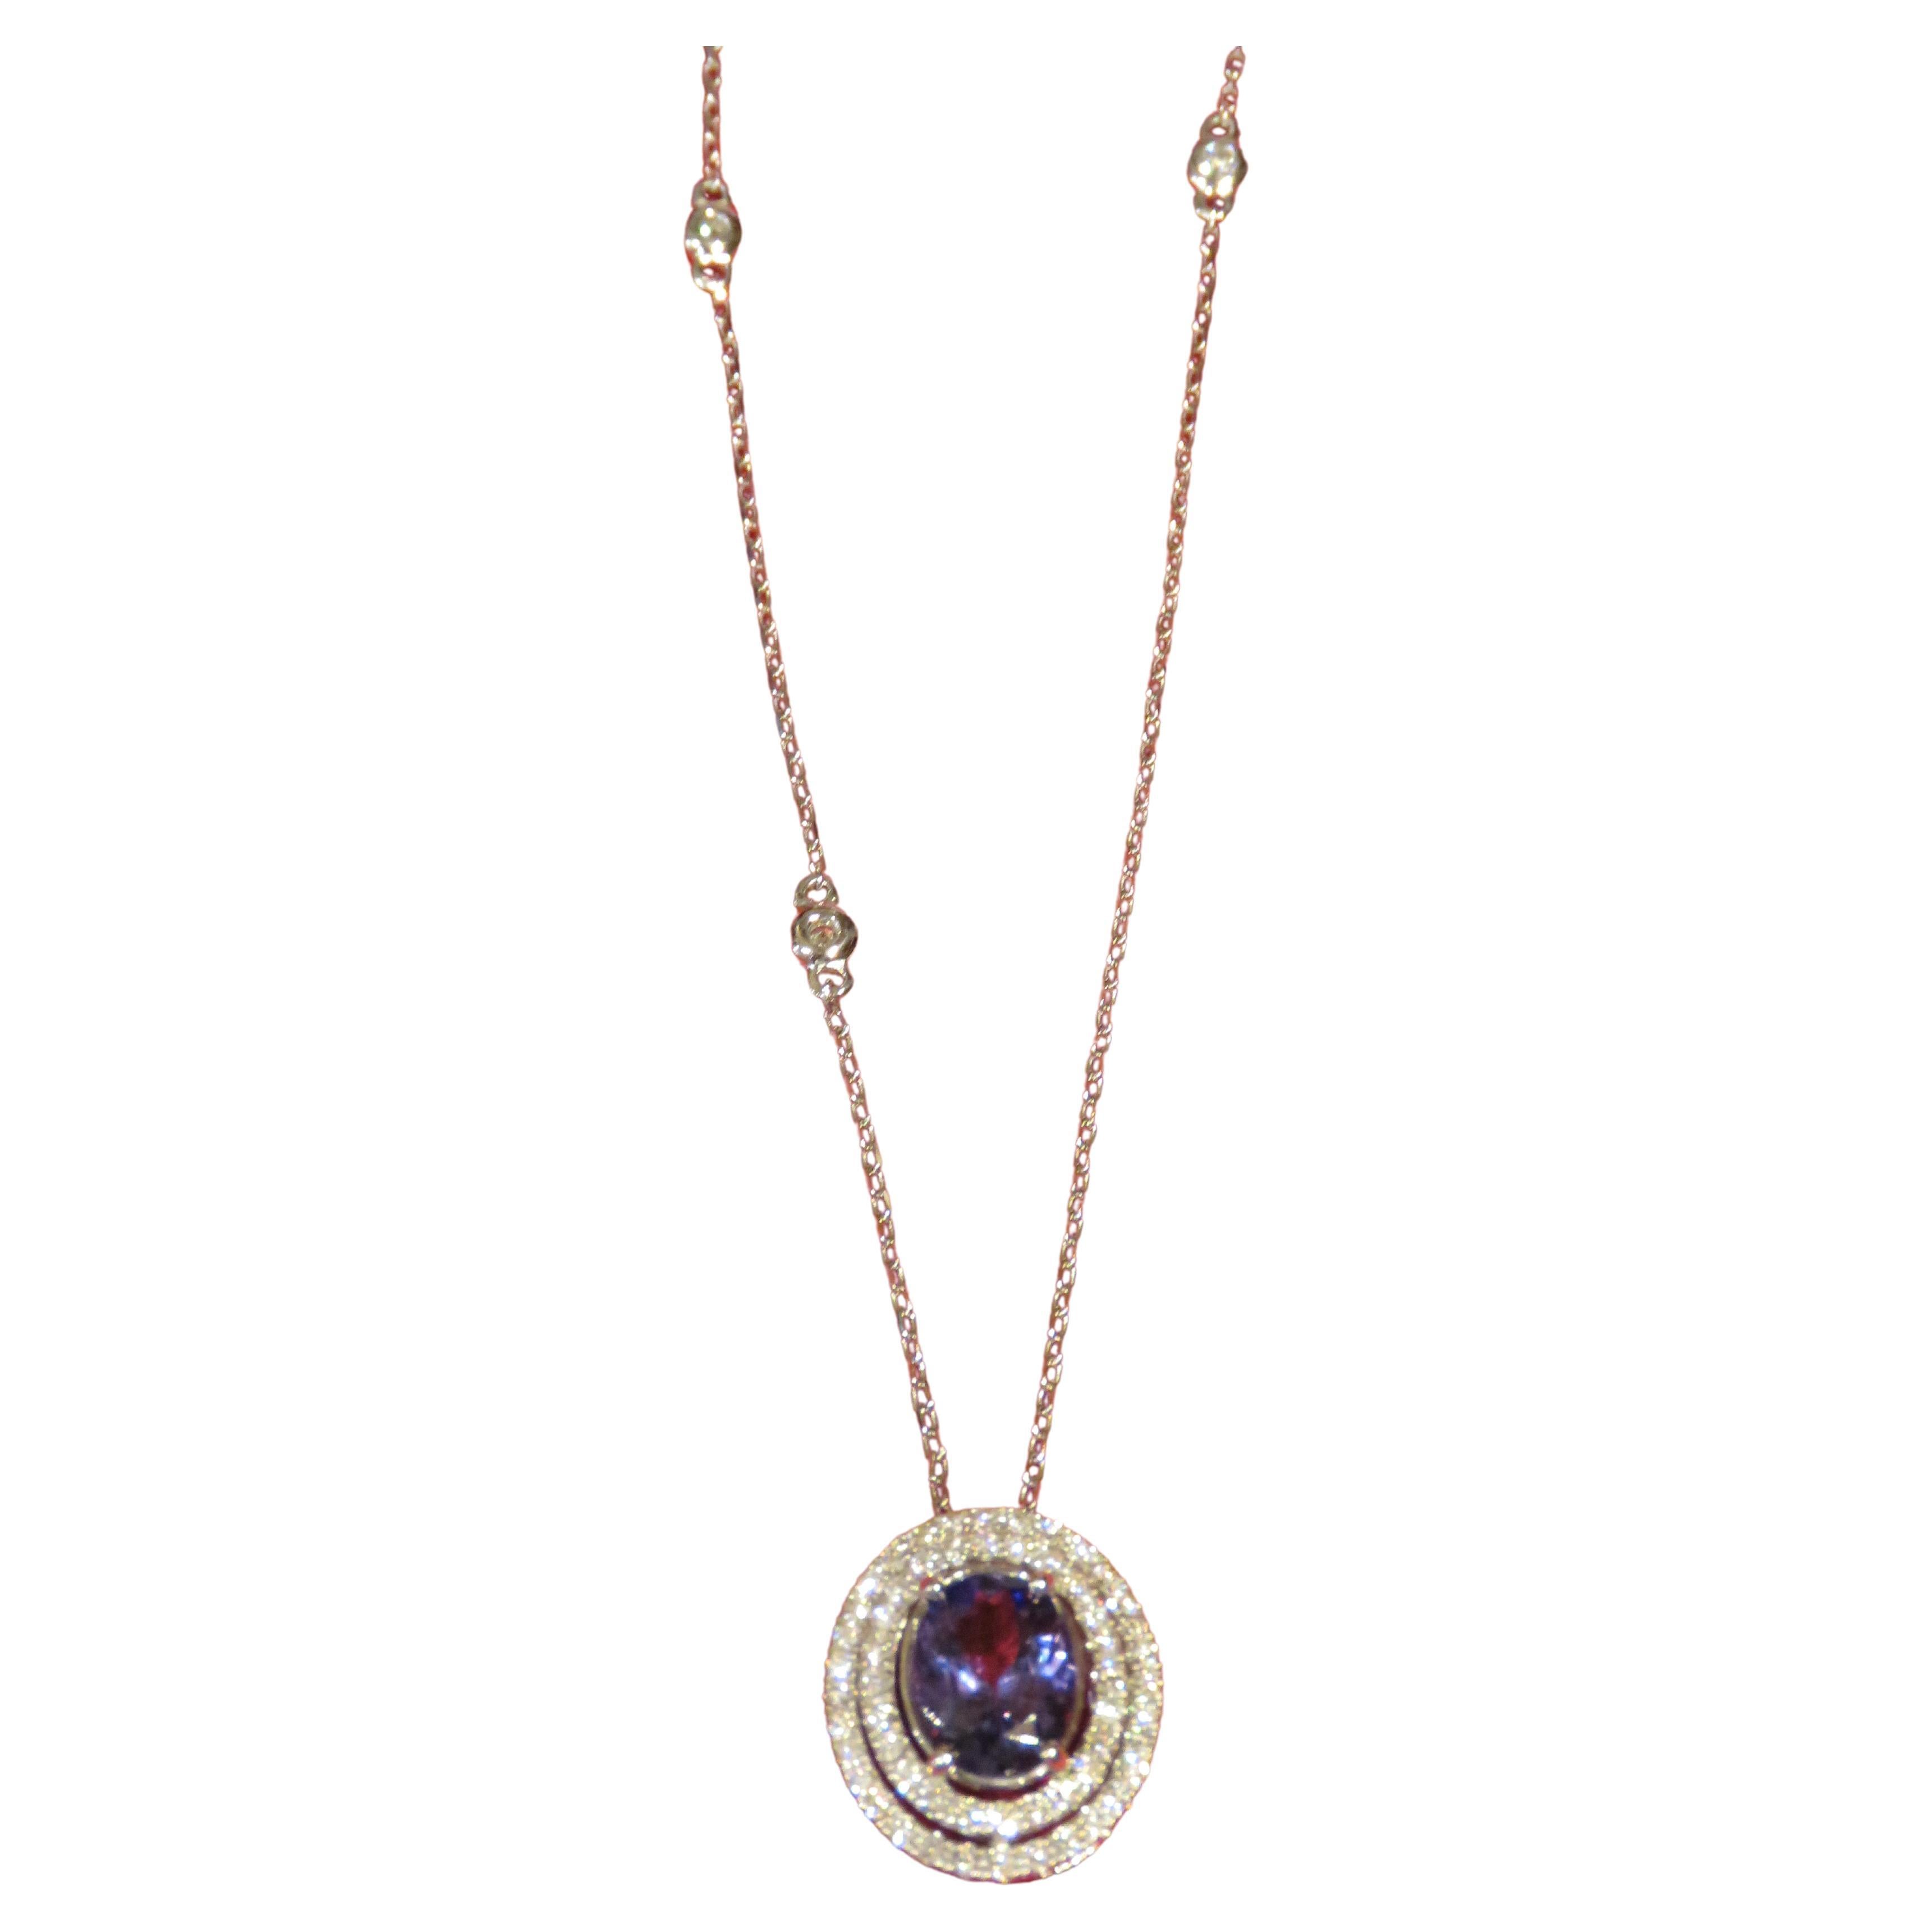 Superbe collier pendentif rare en or 18 carats avec tanzanite fantaisie et diamants 4 000 $, Neuf avec étiquette